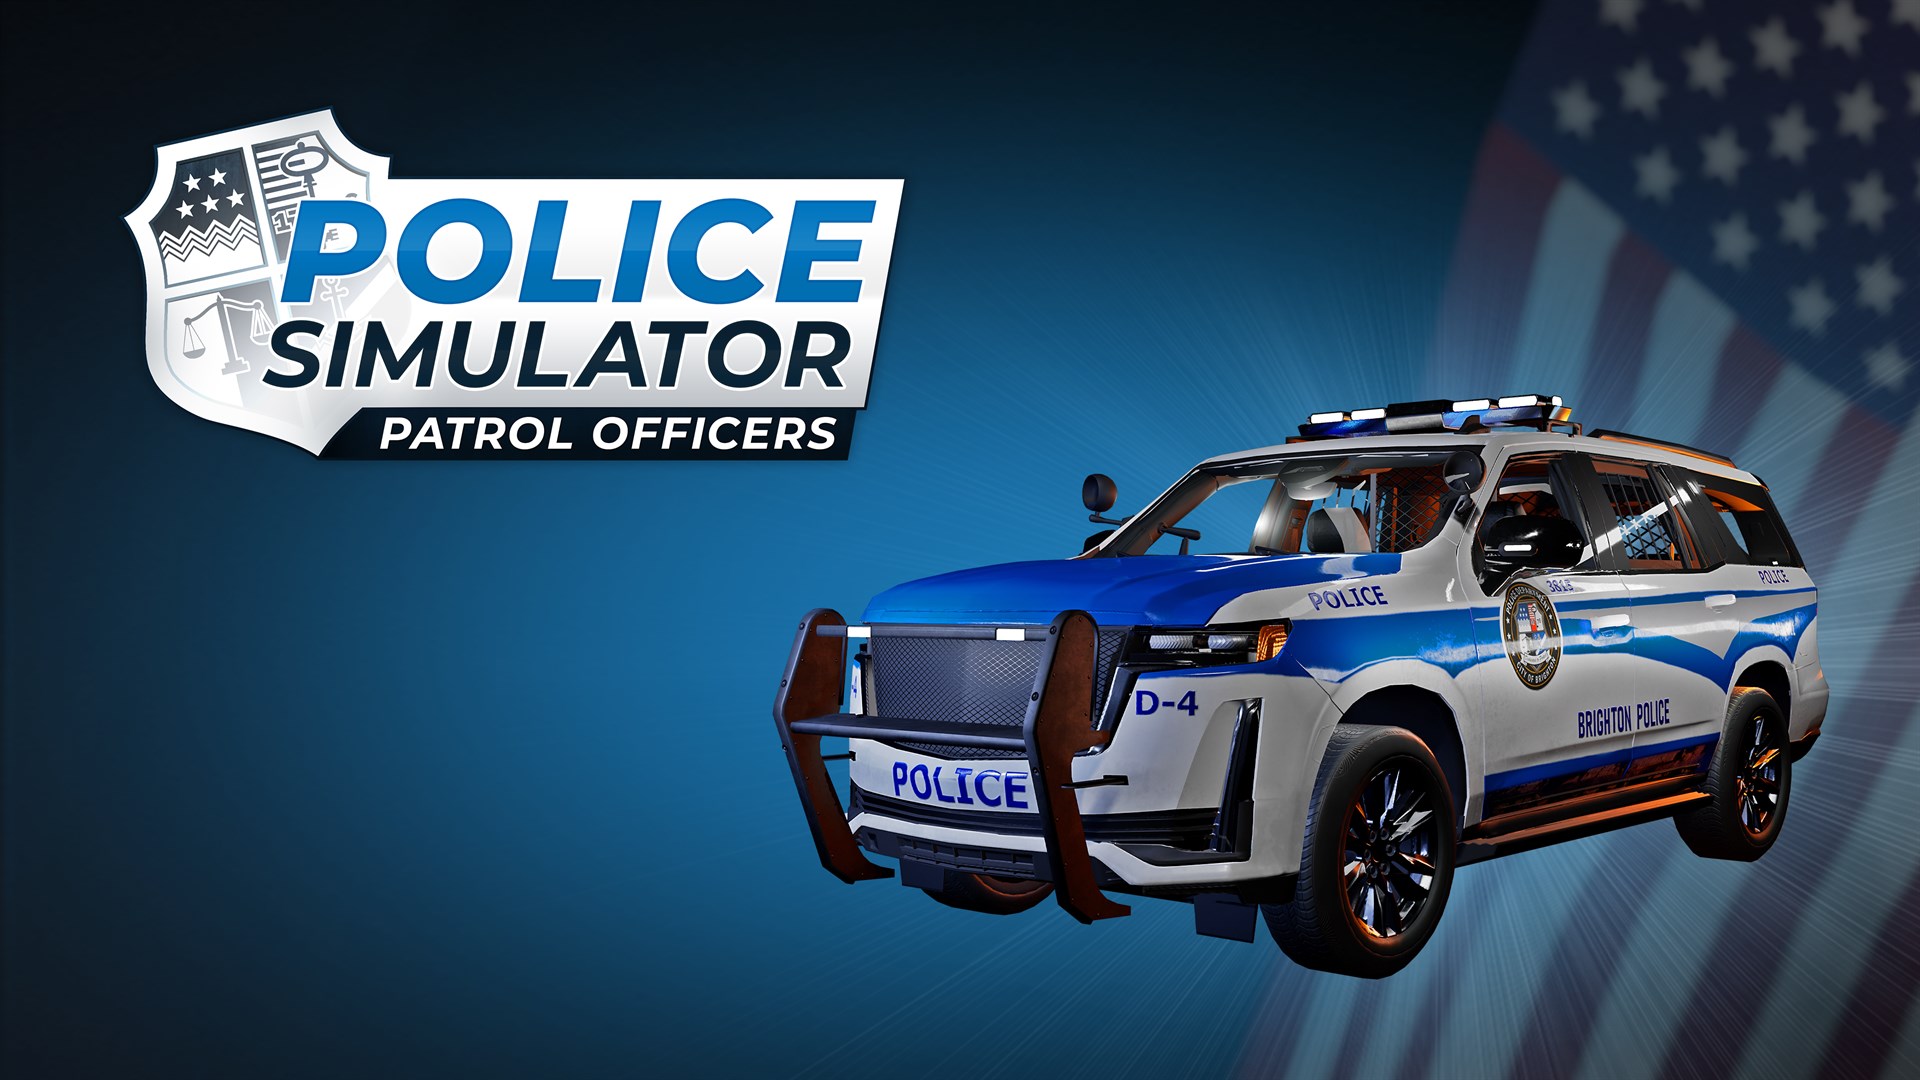 buy-police-simulator-patrol-officers-urban-terrain-vehicle-dlc-microsoft-store-en-bz